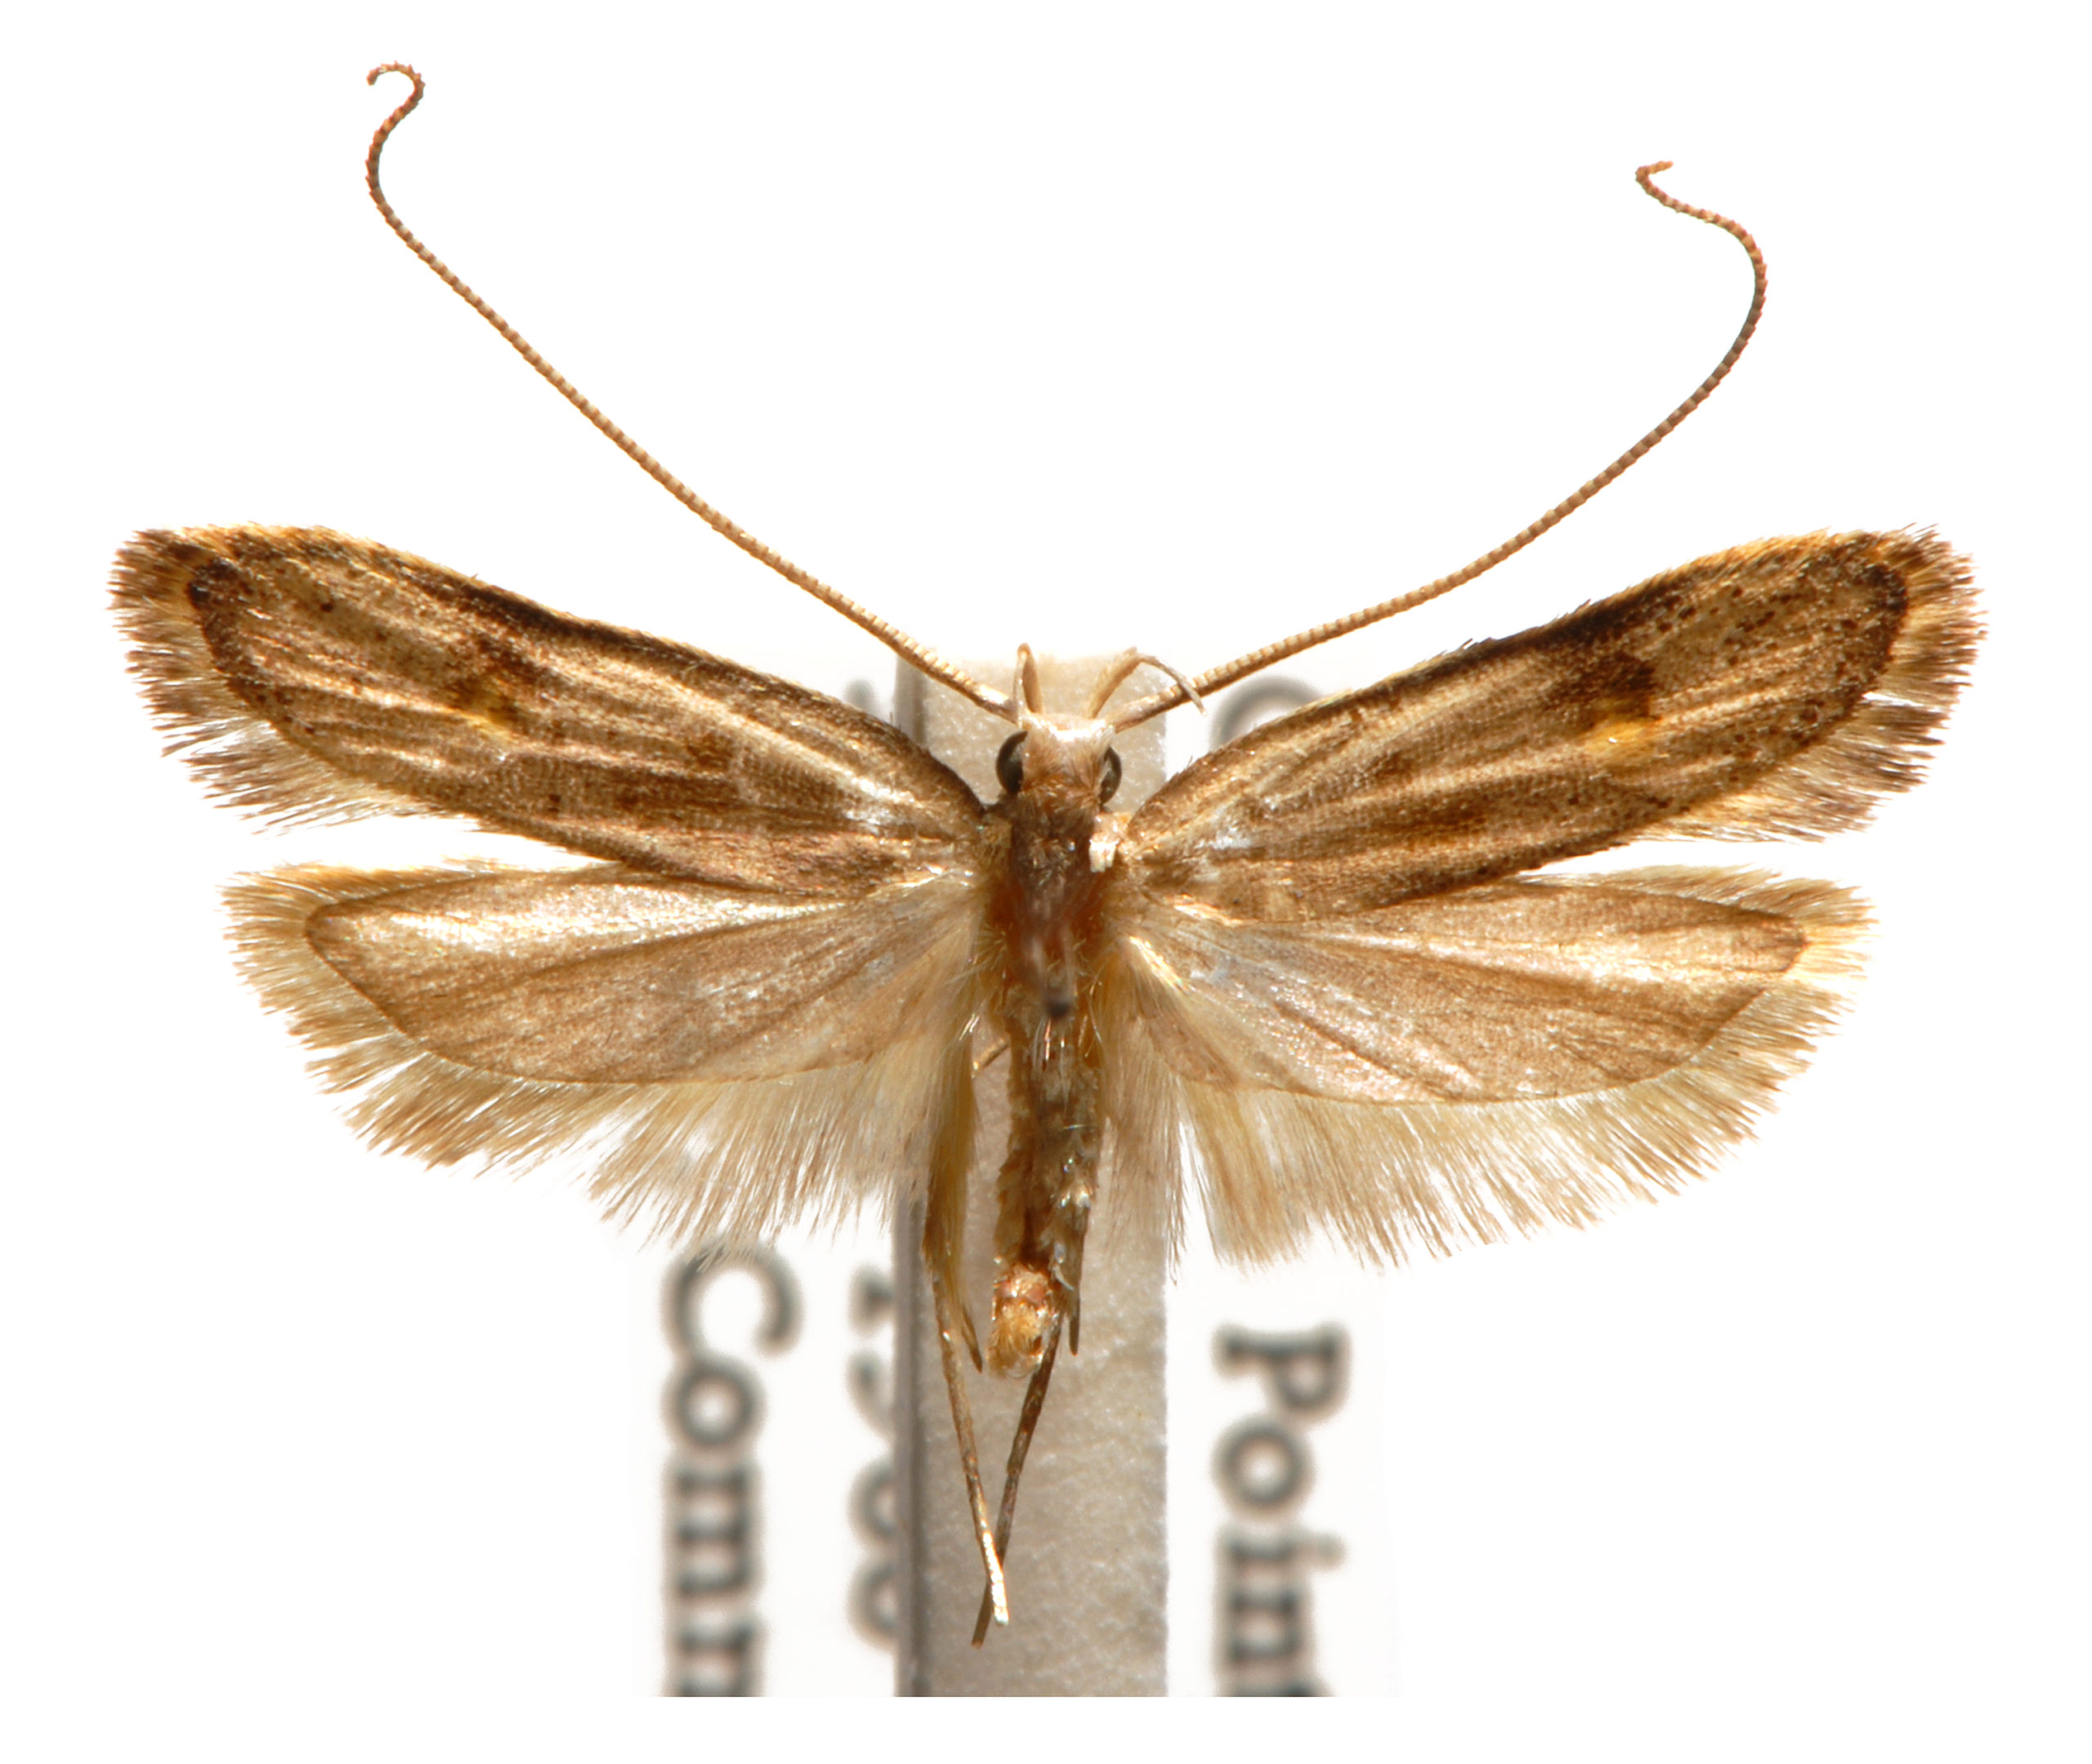 Lecithocera sobria